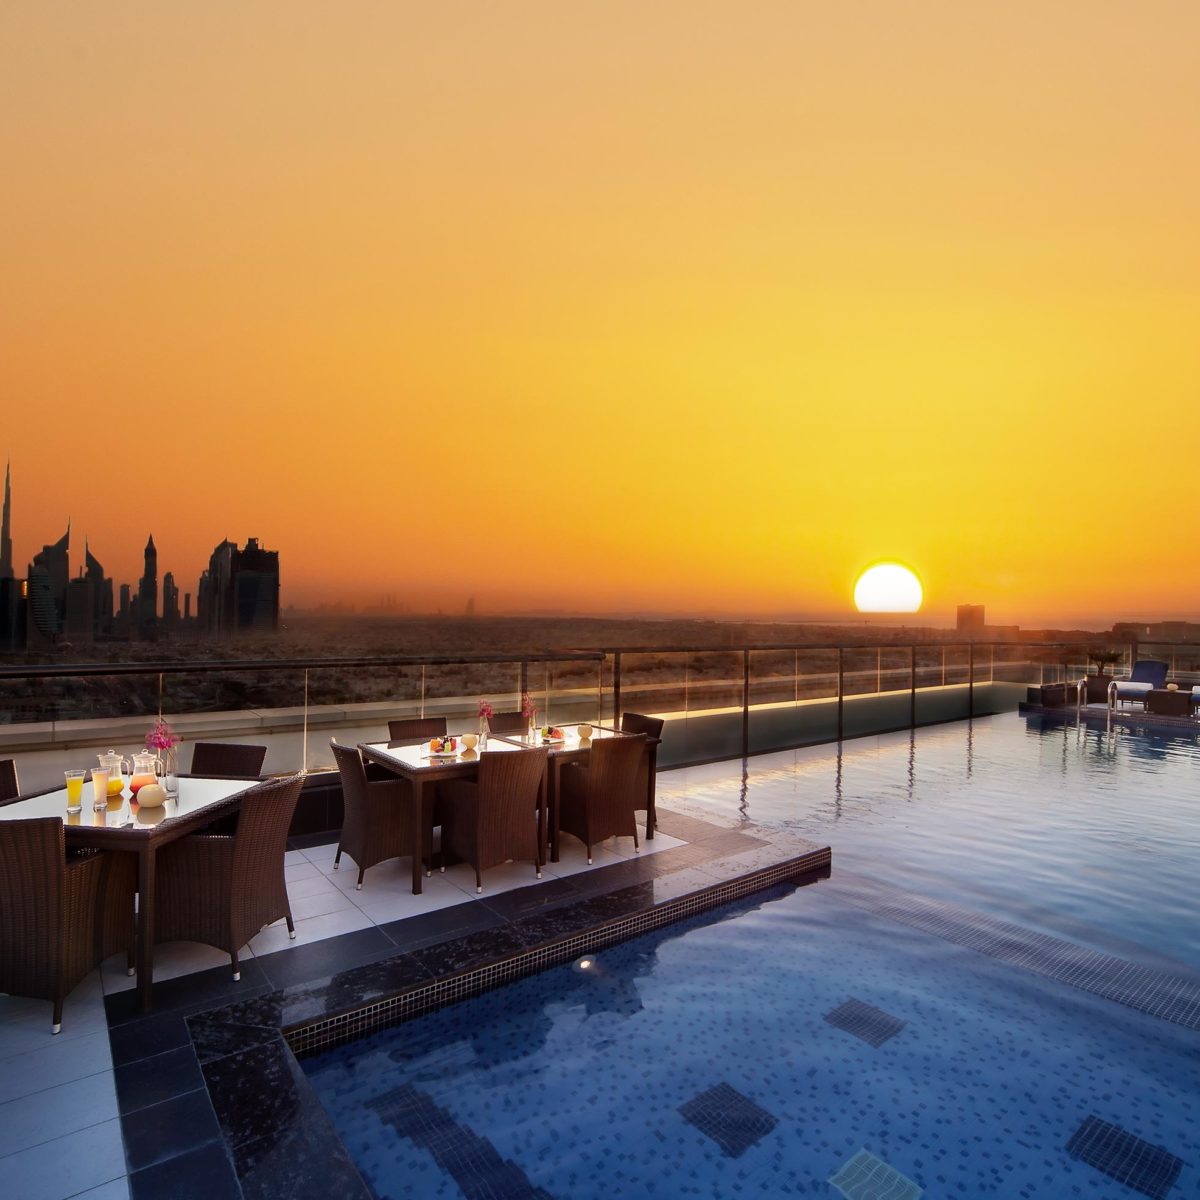 Park Regis Kris Kin Hotel, Dubai